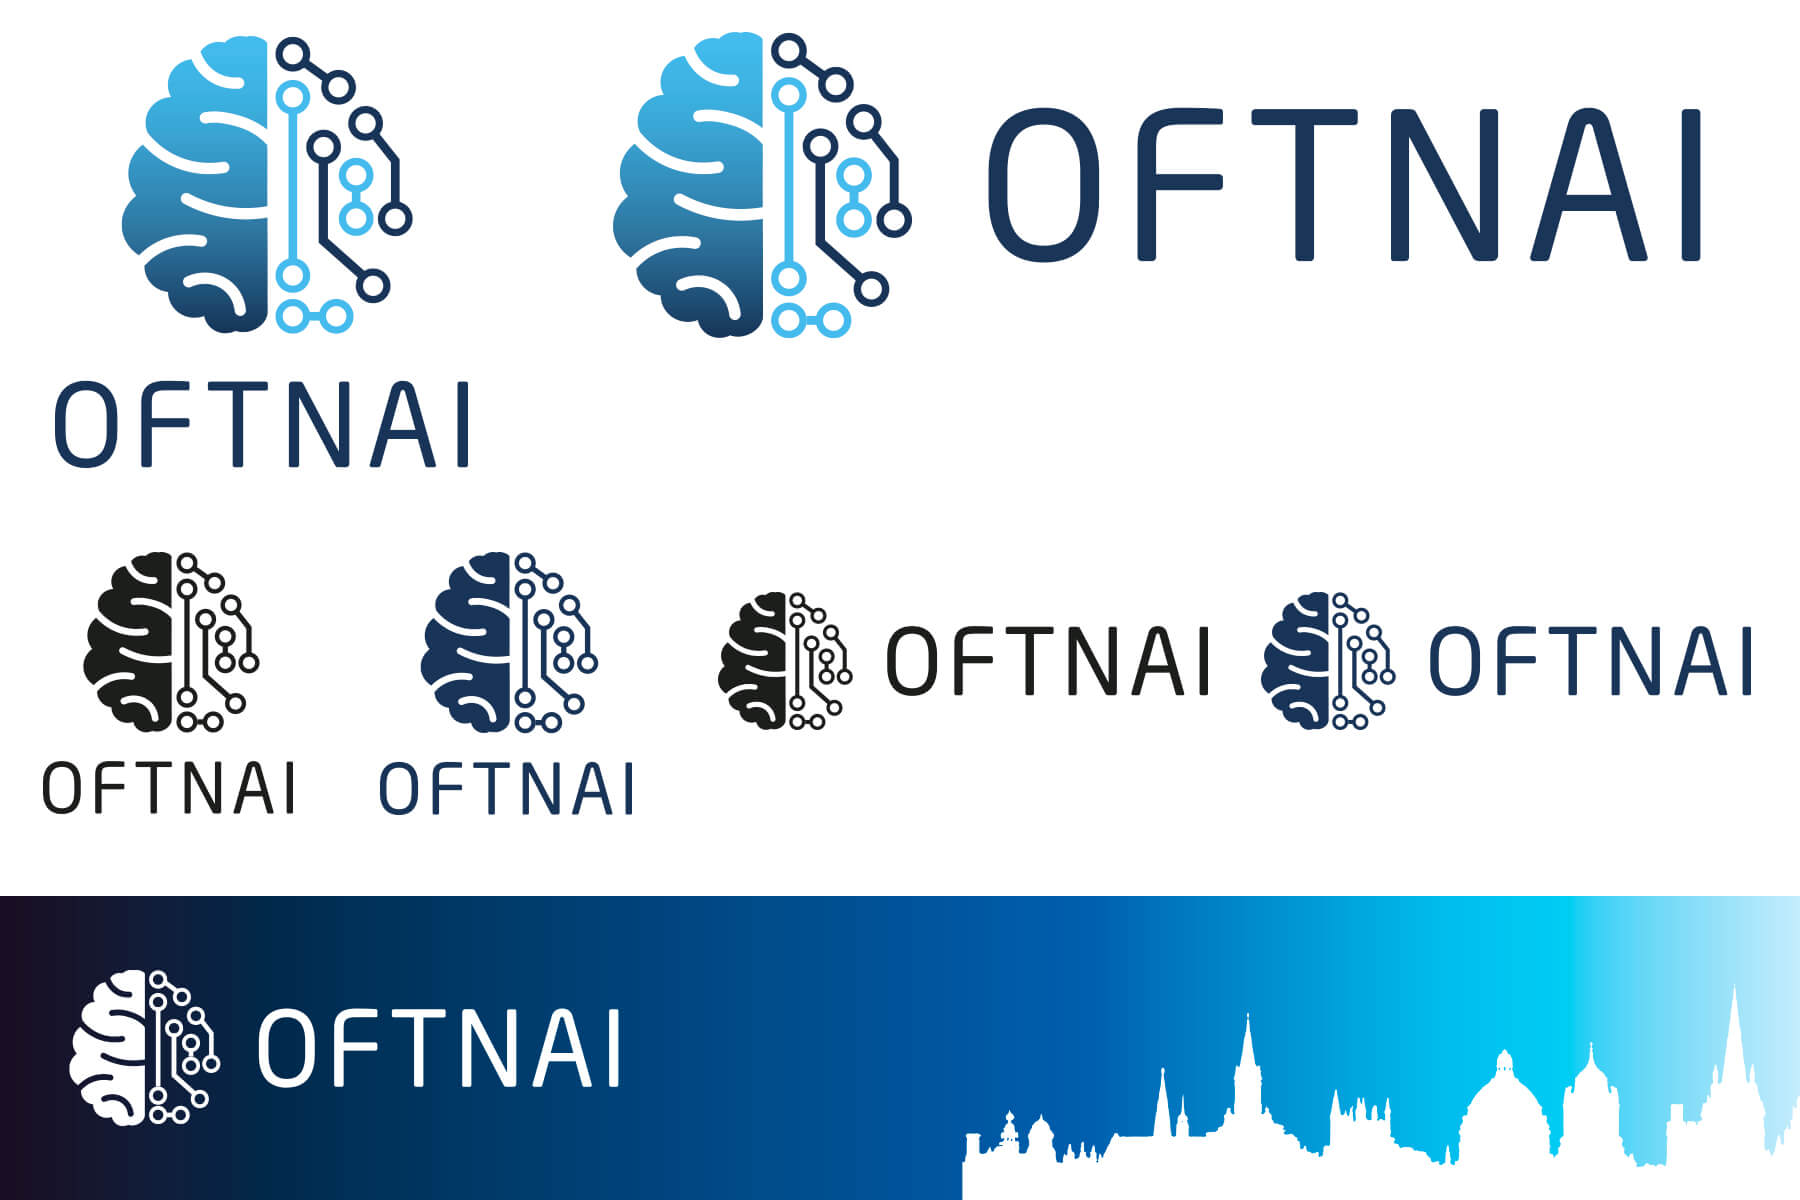 OFTNAI Logos